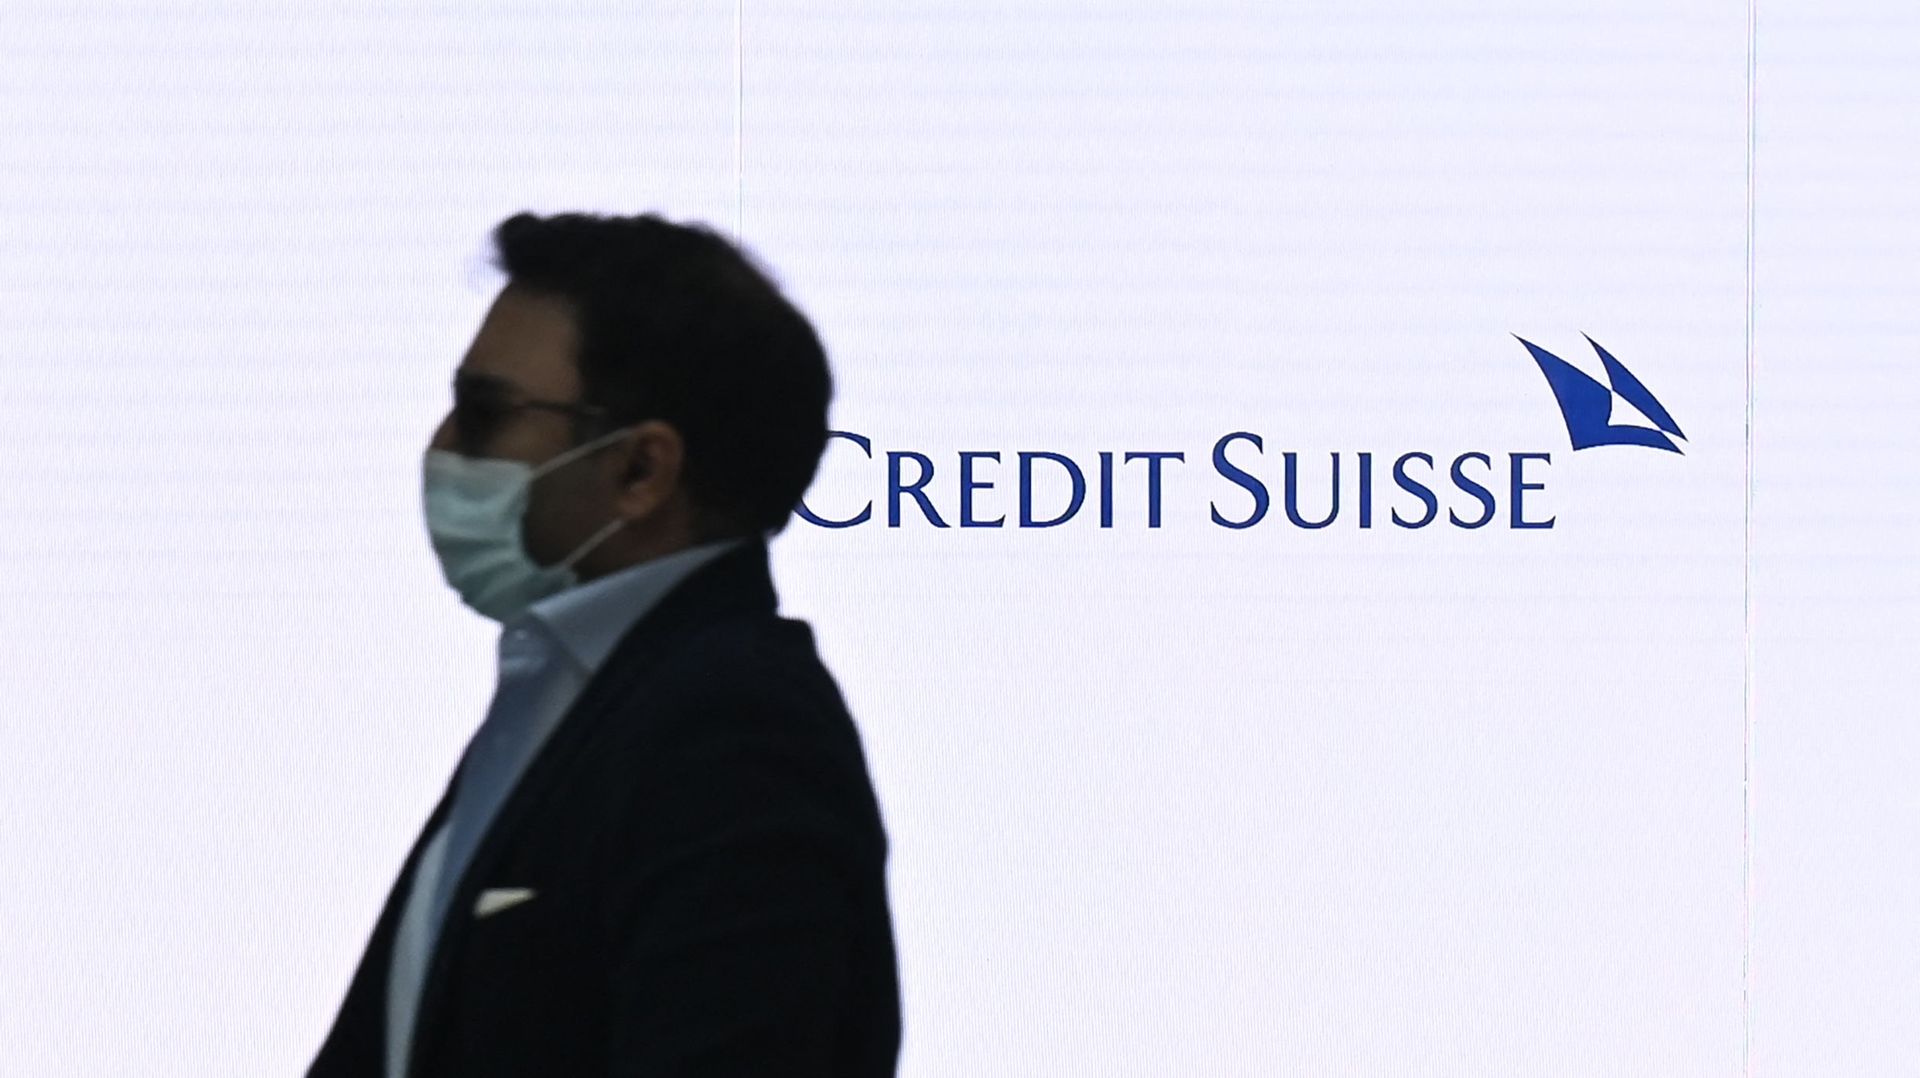 Le président de Credit Suisse démissionne, Axel Lehmann lui succède